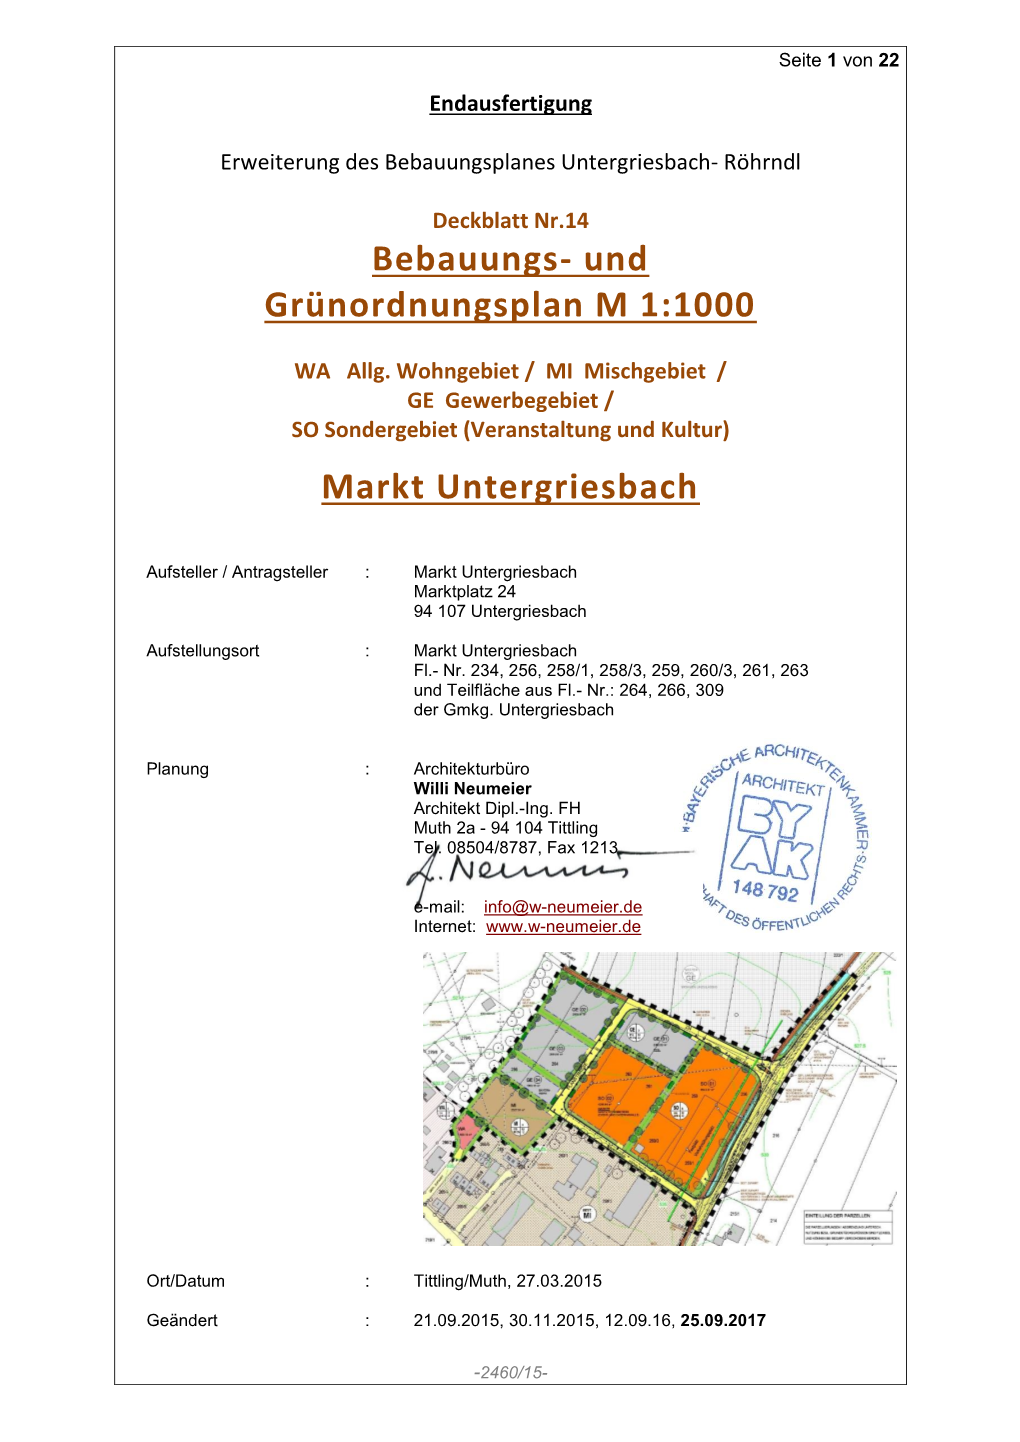 Bebauungs- Und Grünordnungsplan M 1:1000 Markt Untergriesbach